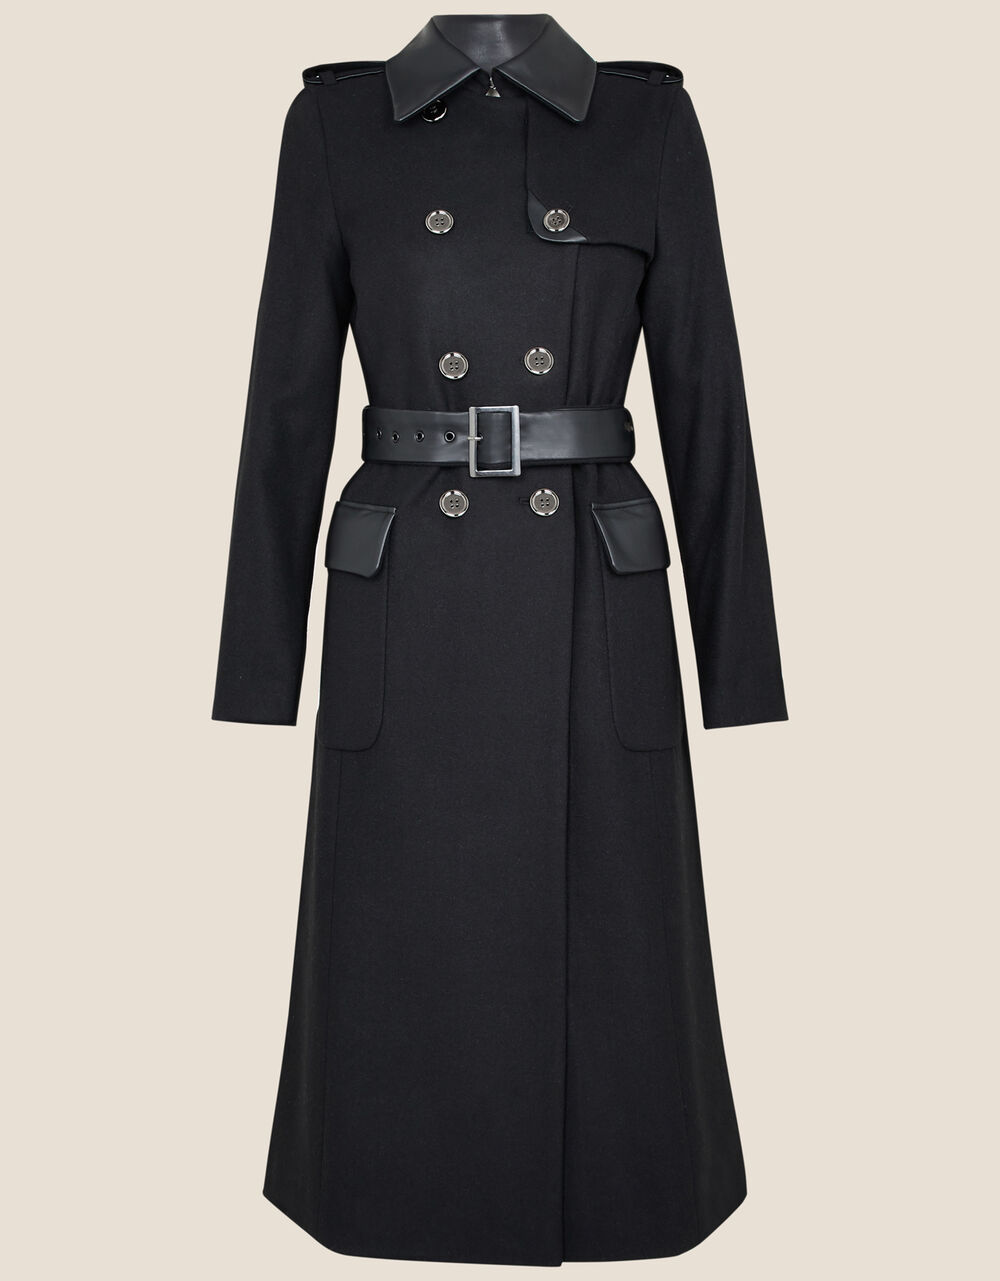 Anne Trench Coat in Wool Blend Black | Women's Coats | Monsoon UK.